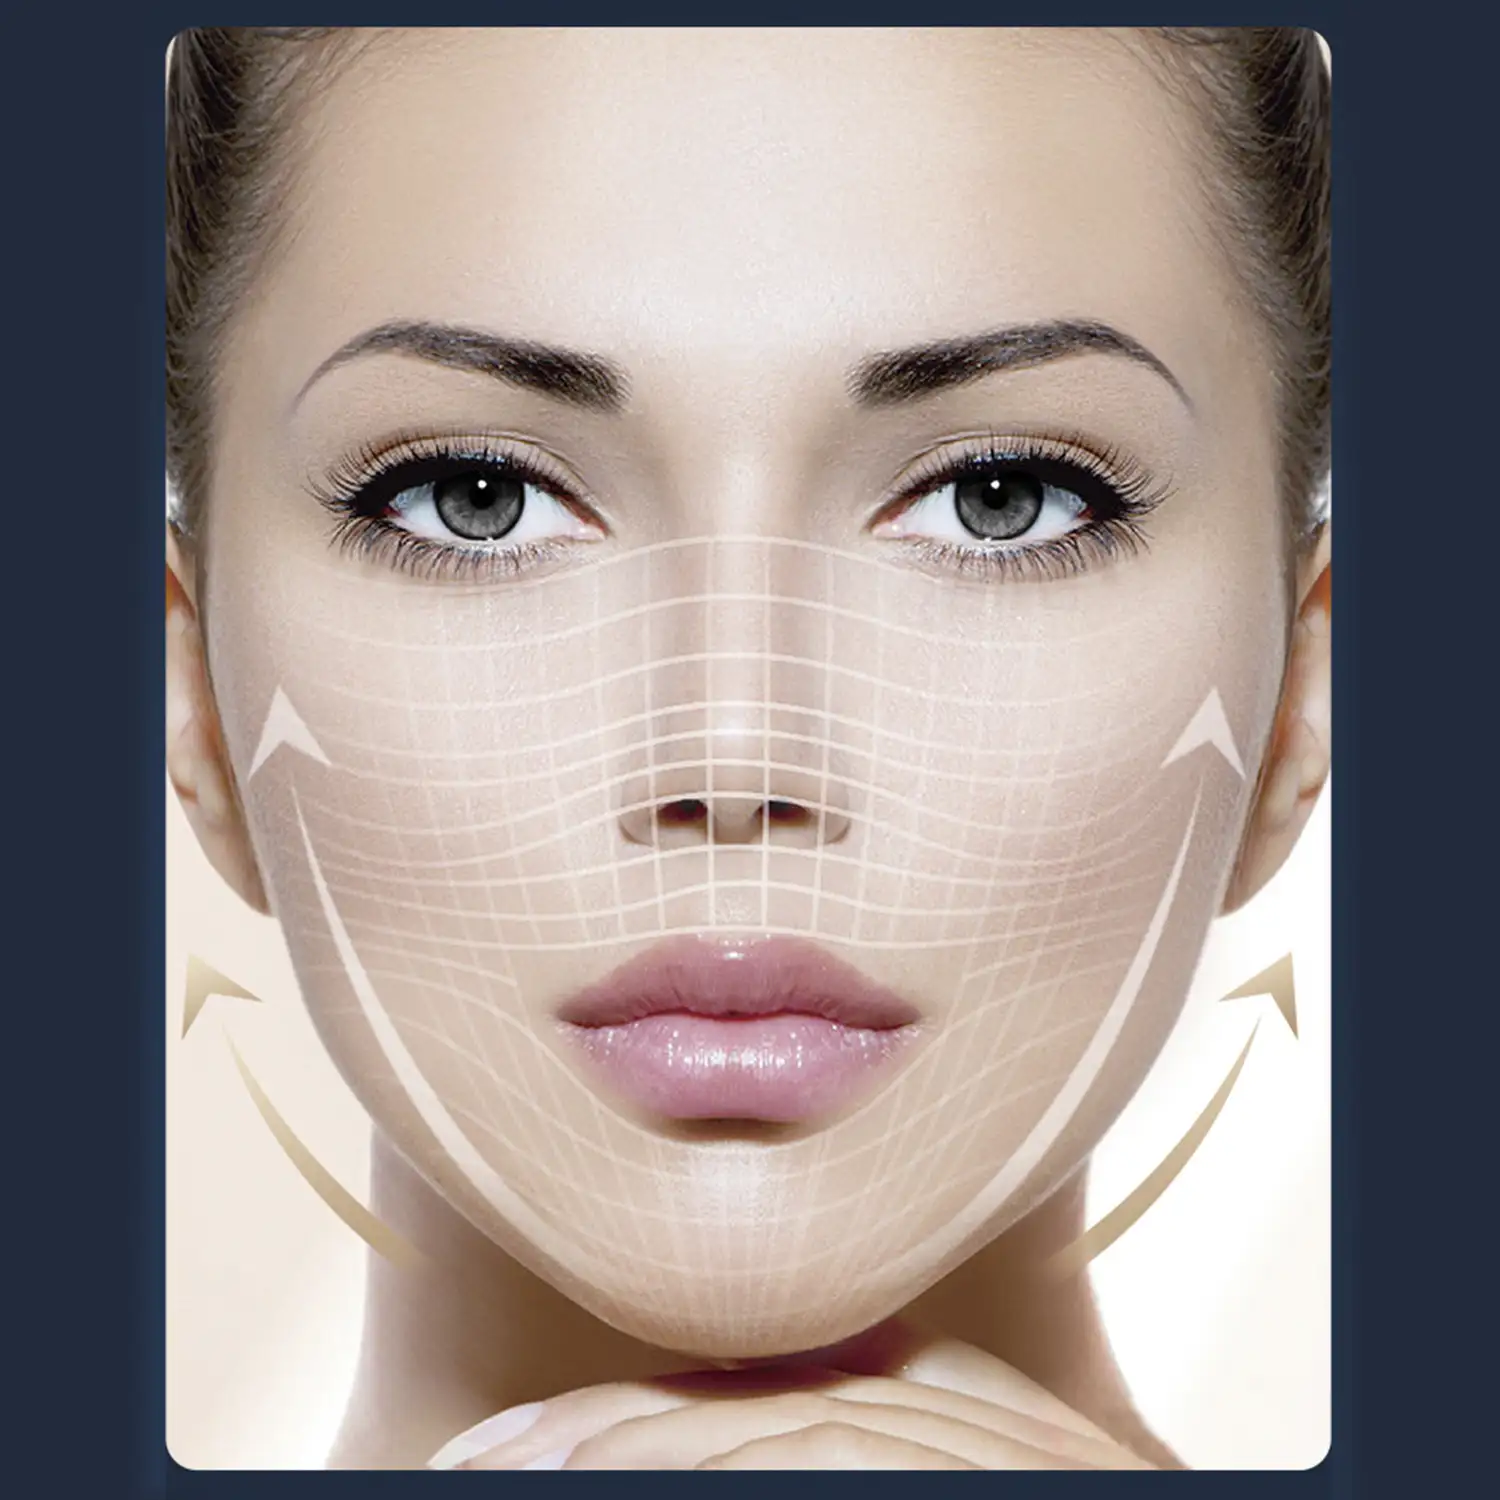 Cuidado de la piel 3 en 1. Instrumento de belleza ultrasónico, EMS y radiofrecuencia.